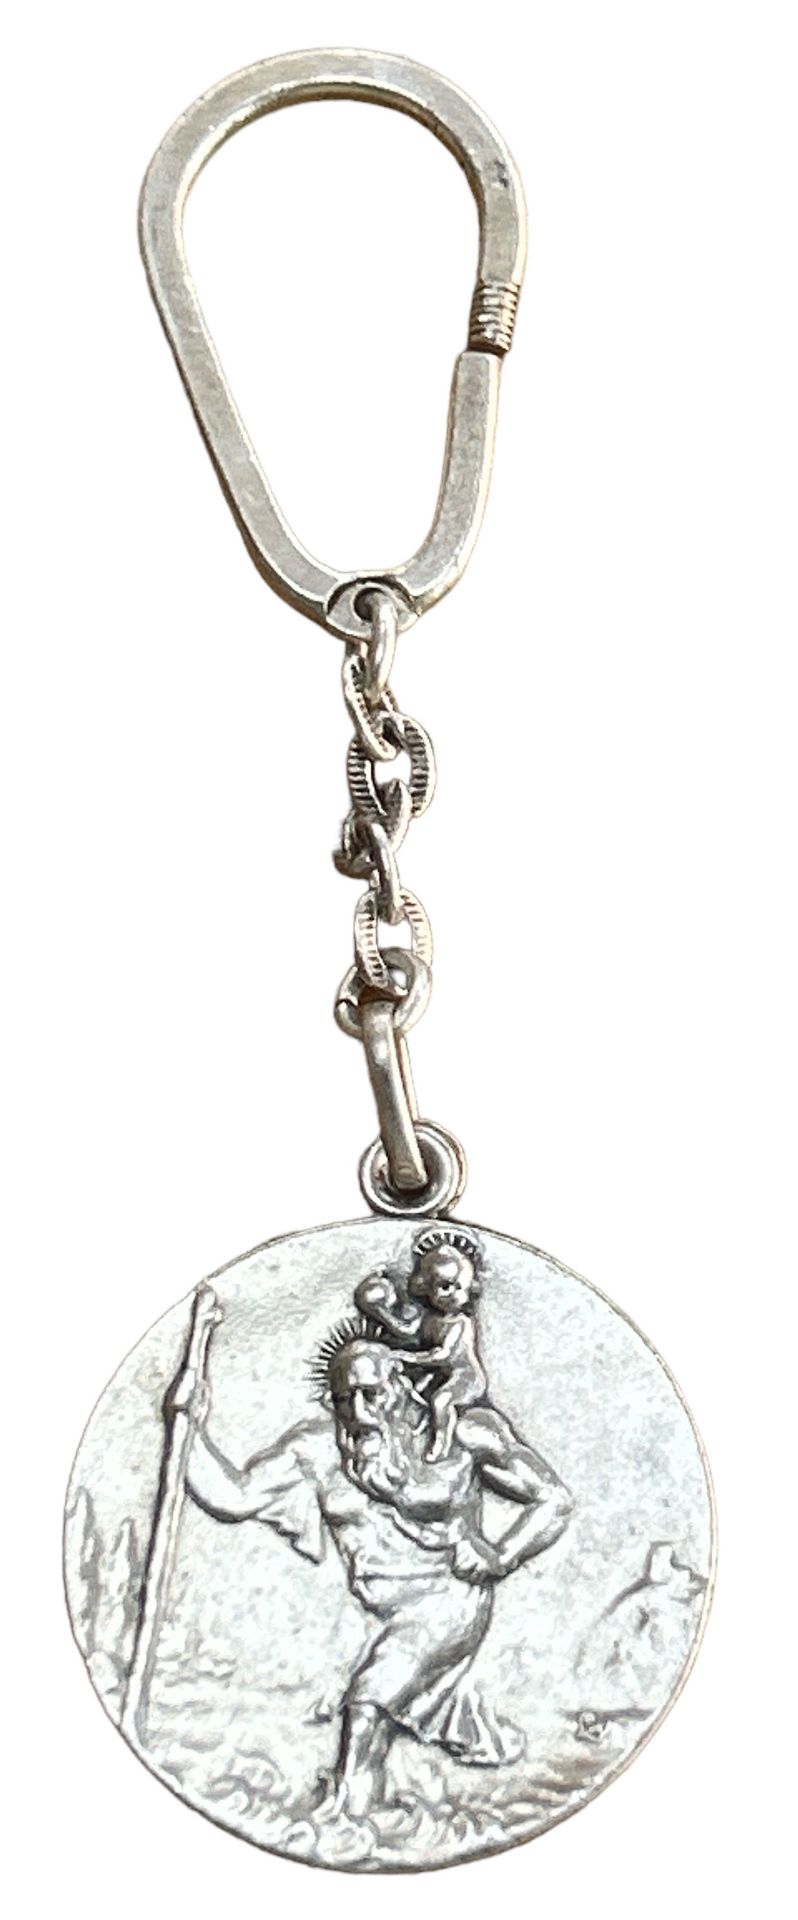 Schlüsselanhänger mit Hl. Christopherus, Silber-925-, verso Personendaten, 2,6 gr.